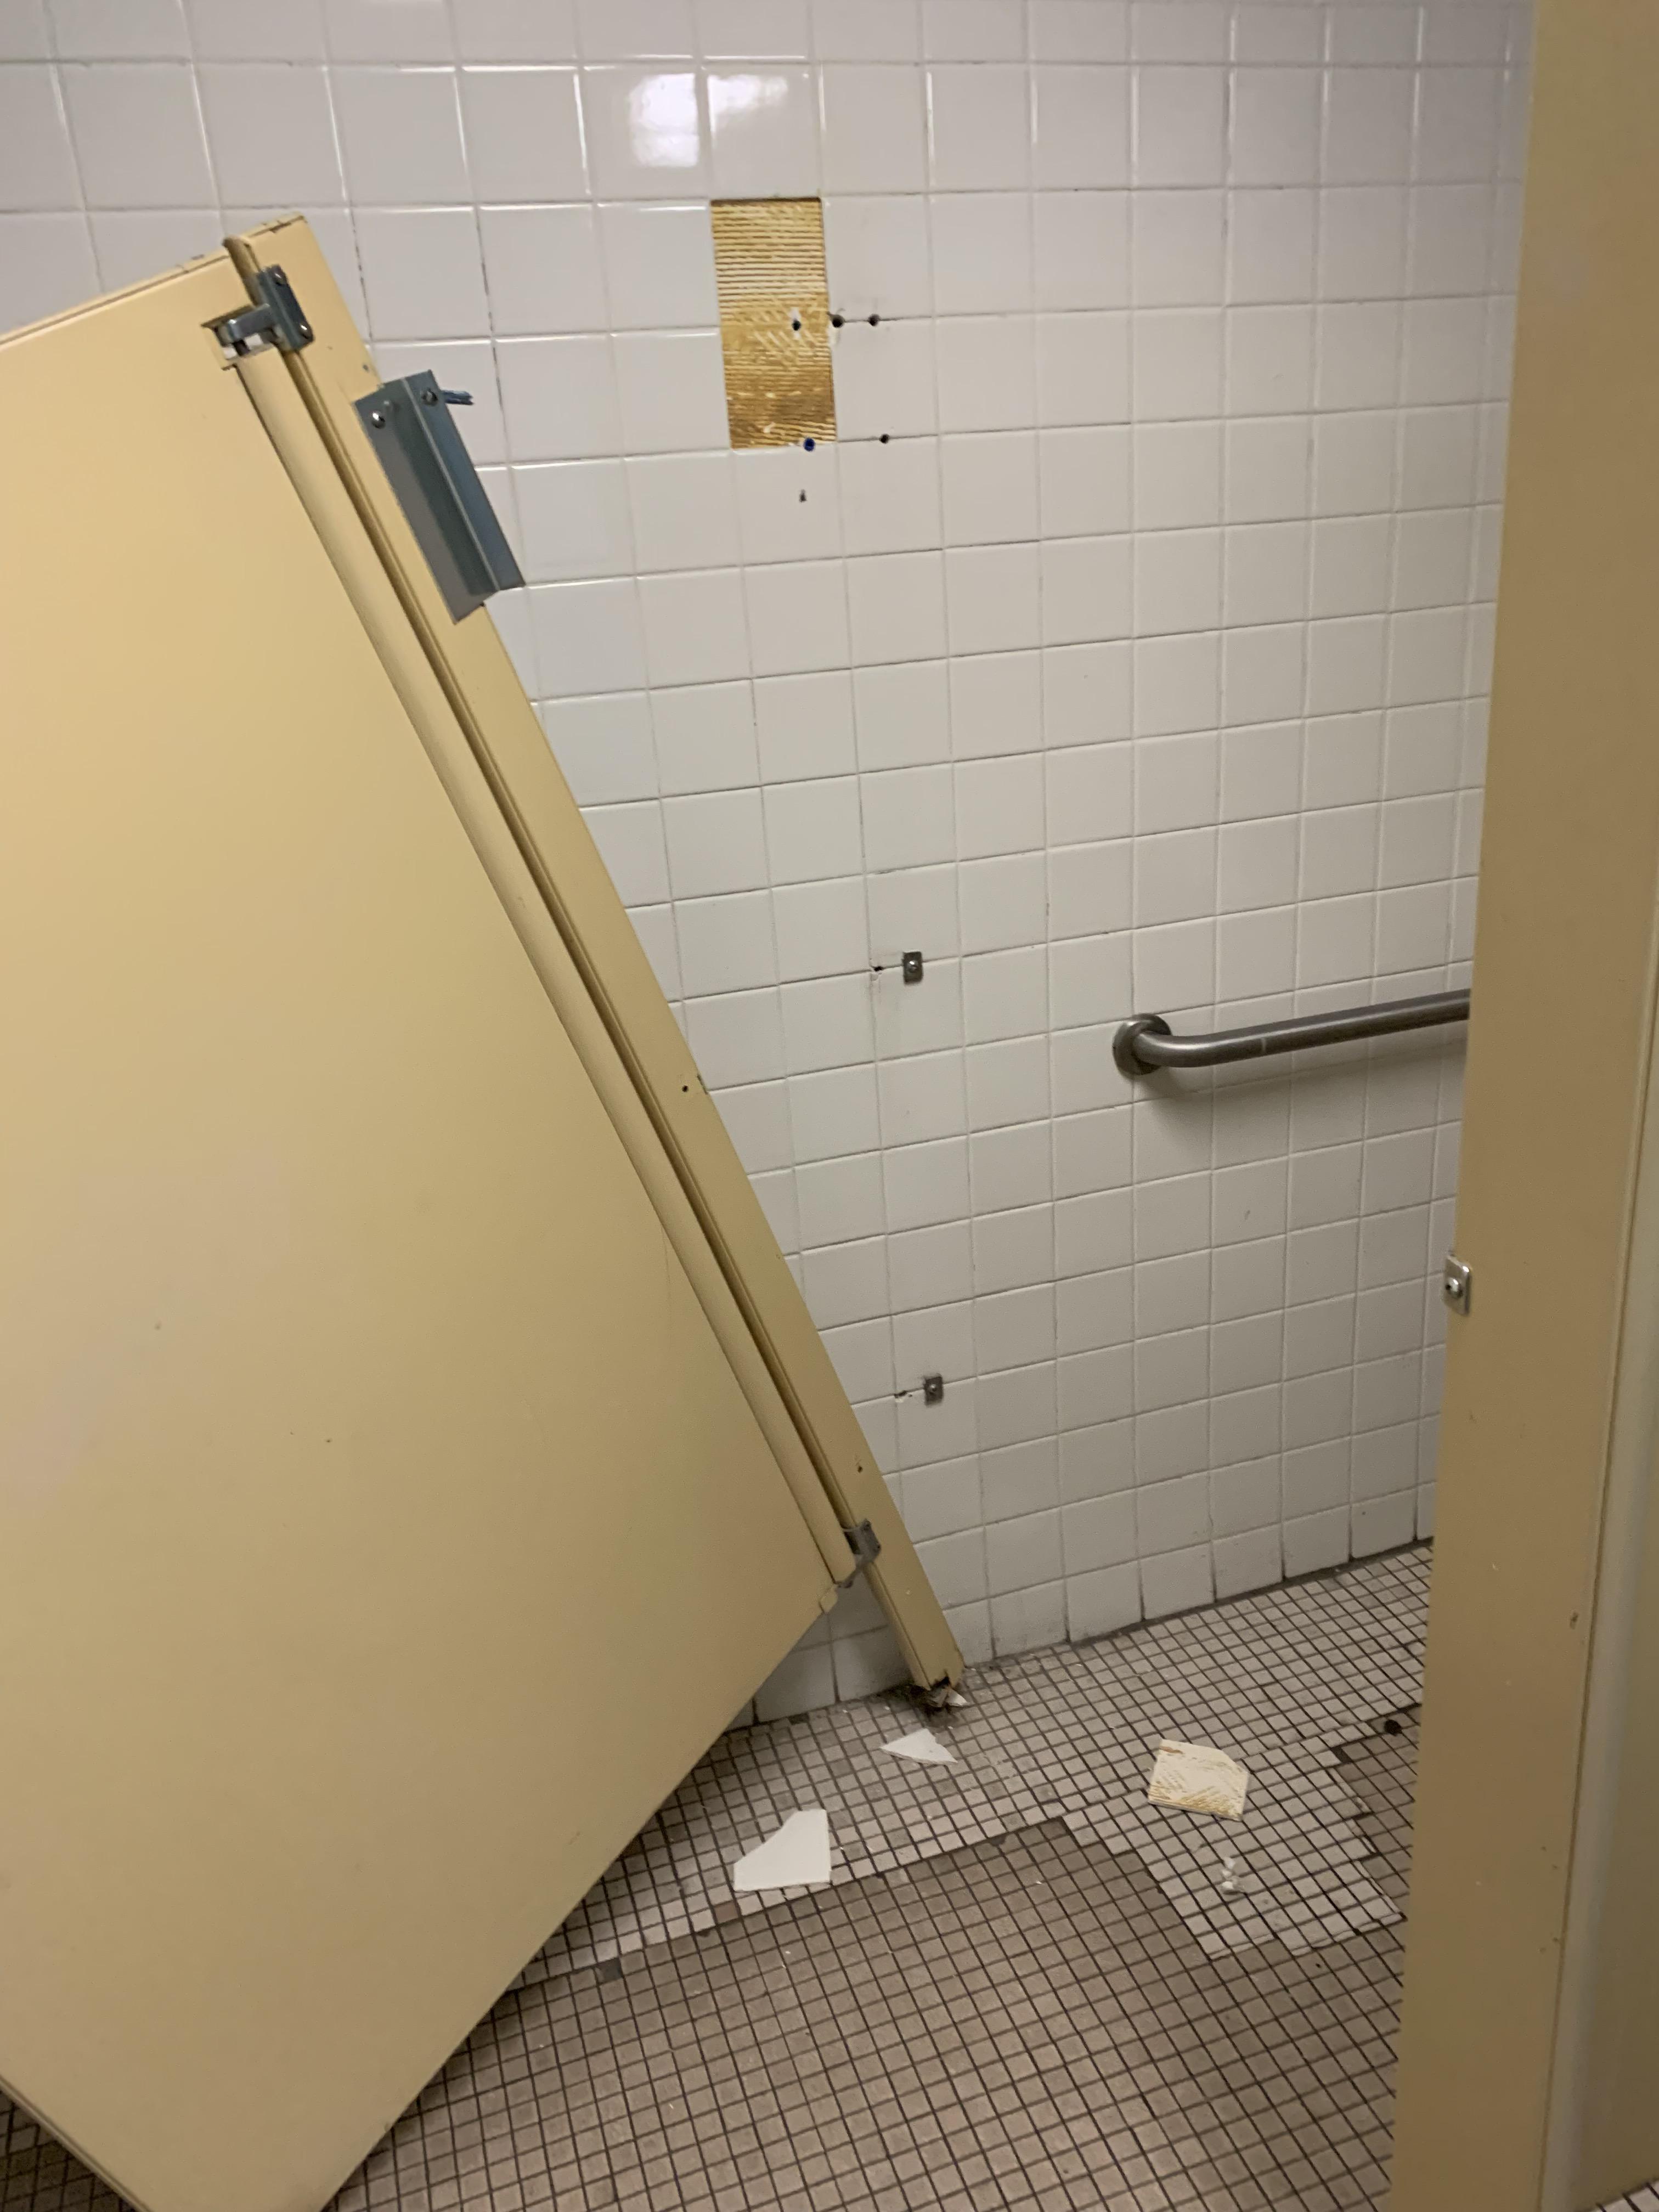 ripped off bathroom door